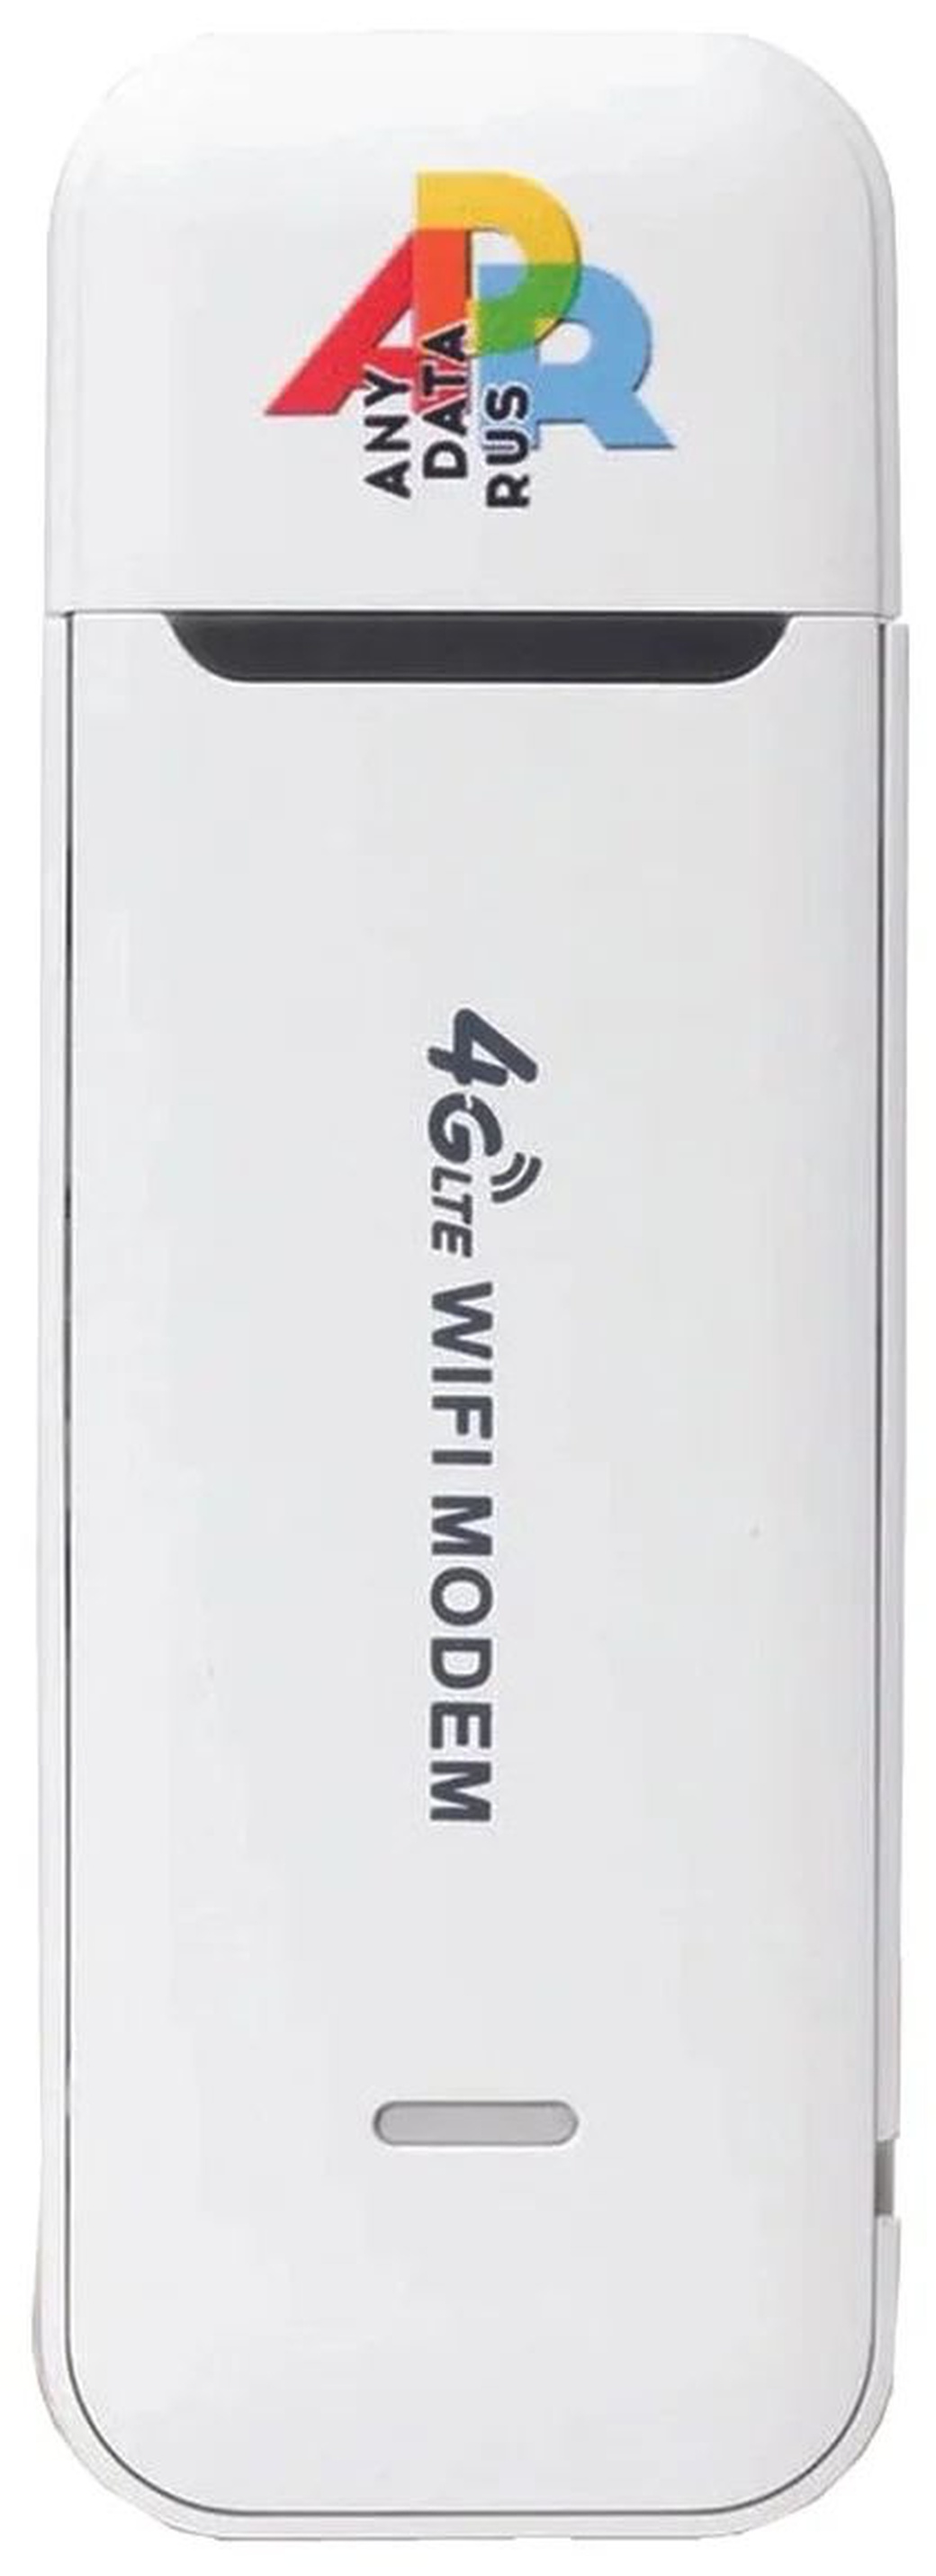 Модем Anydata W150 3G/4G USB внешний, белый фото